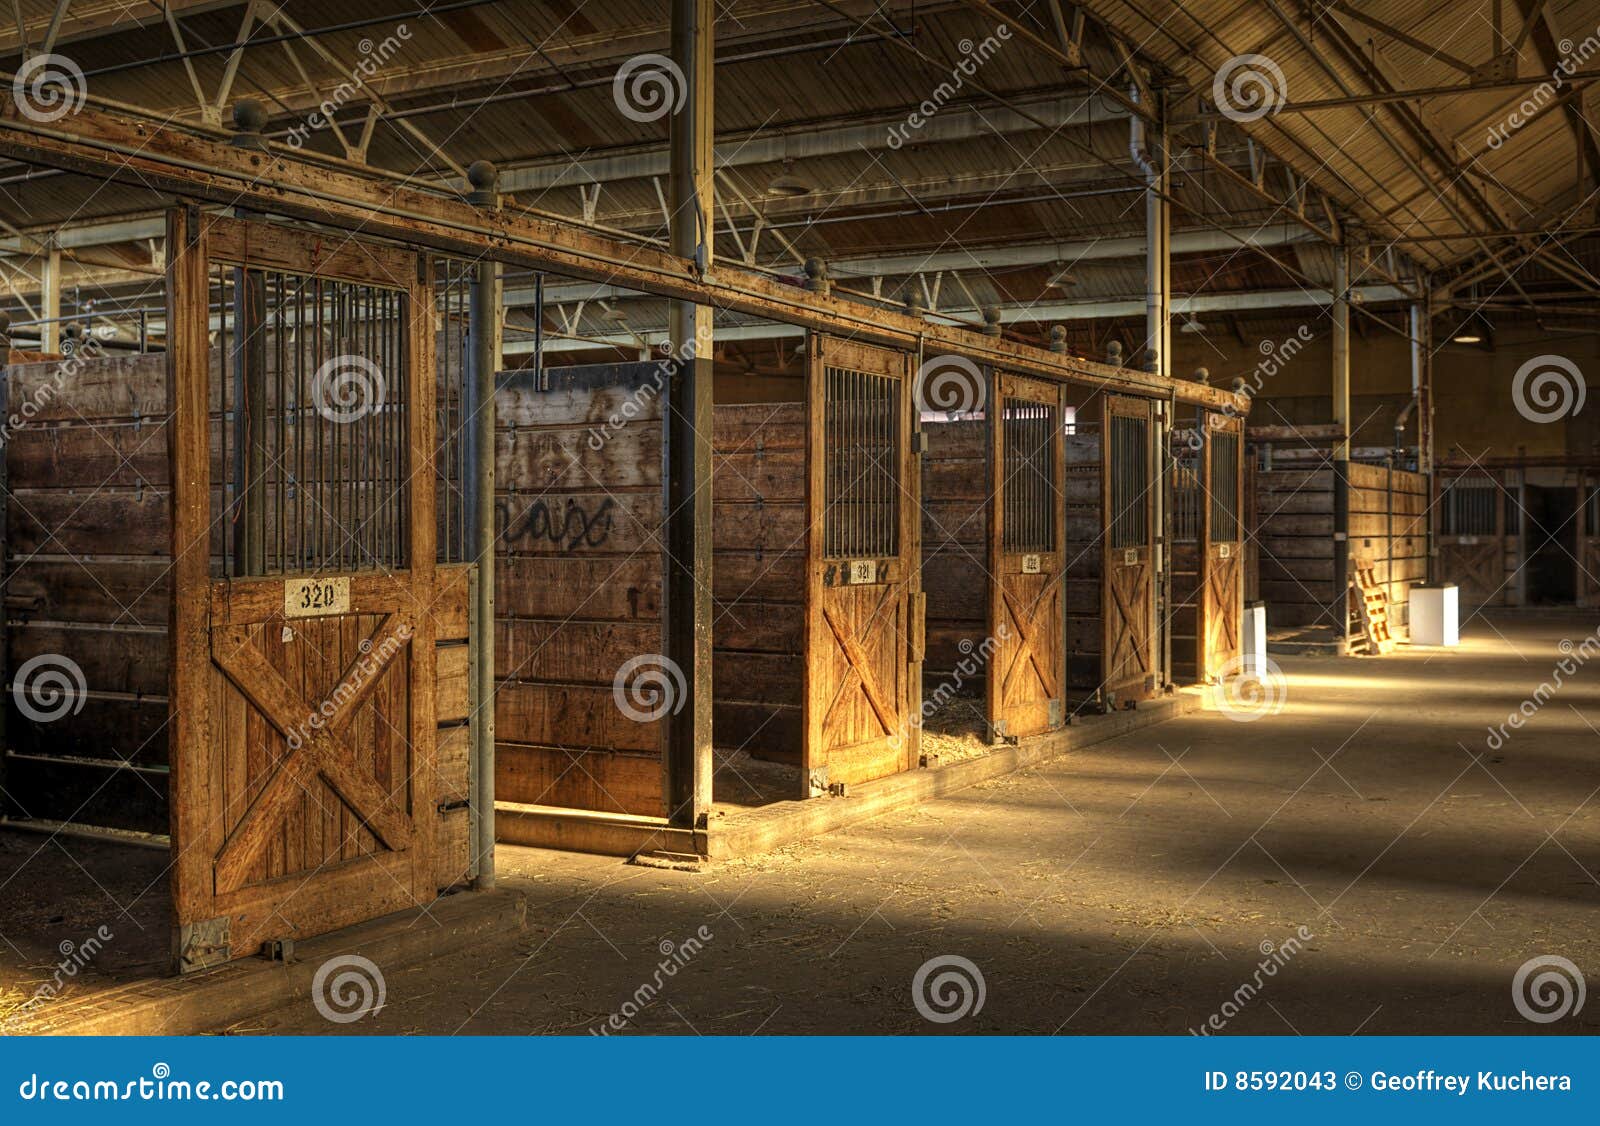 empty horse barn